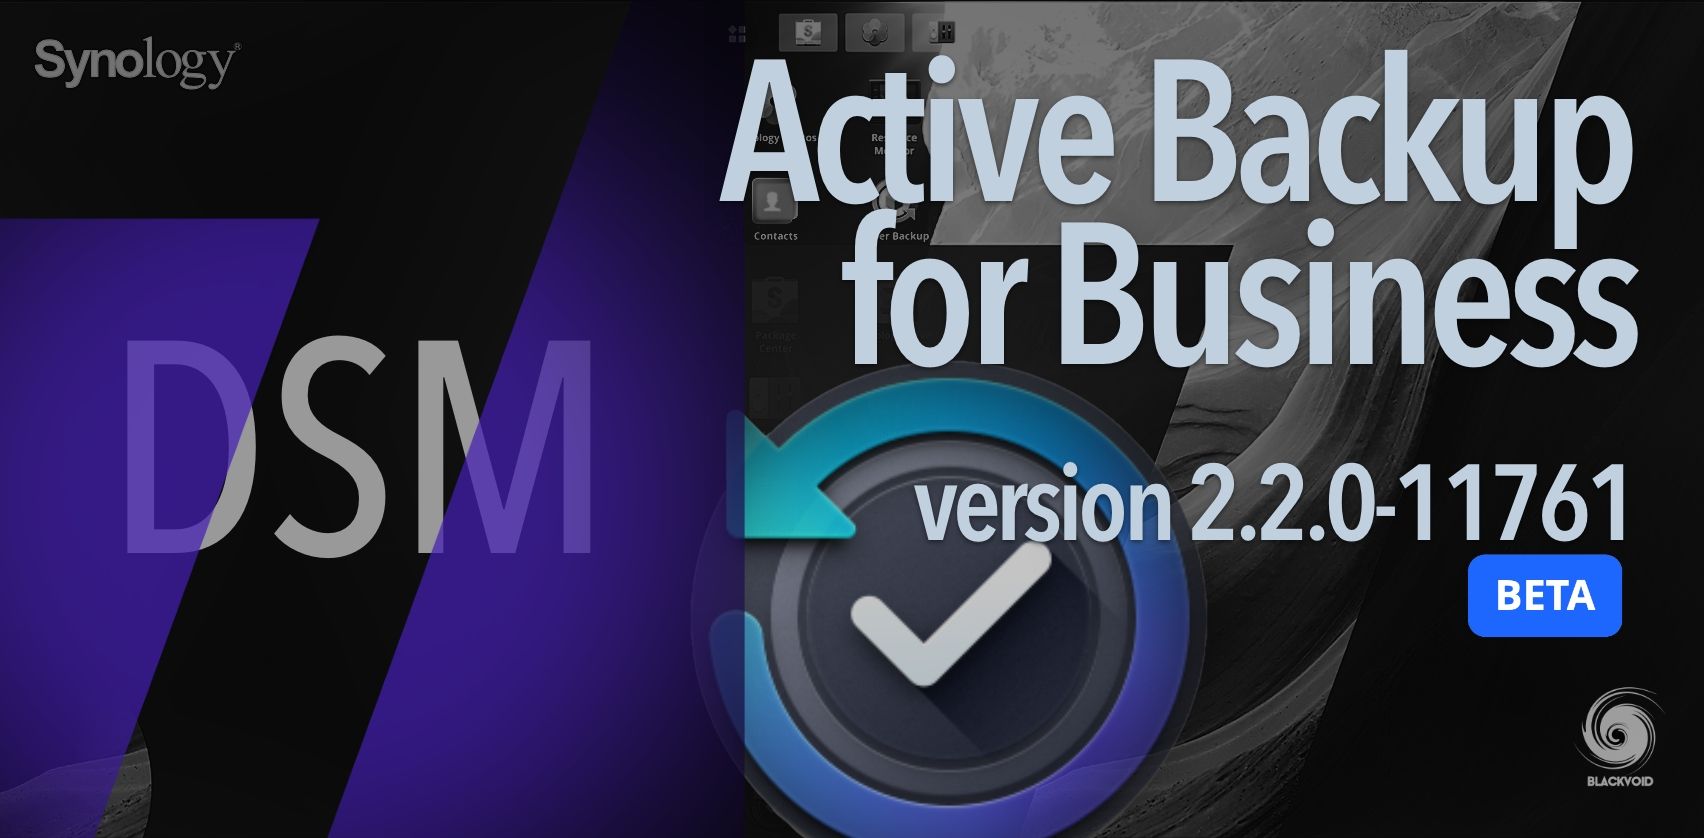 DSM 7 - Active Backup for Business v2.2.0-11761 (BETA)